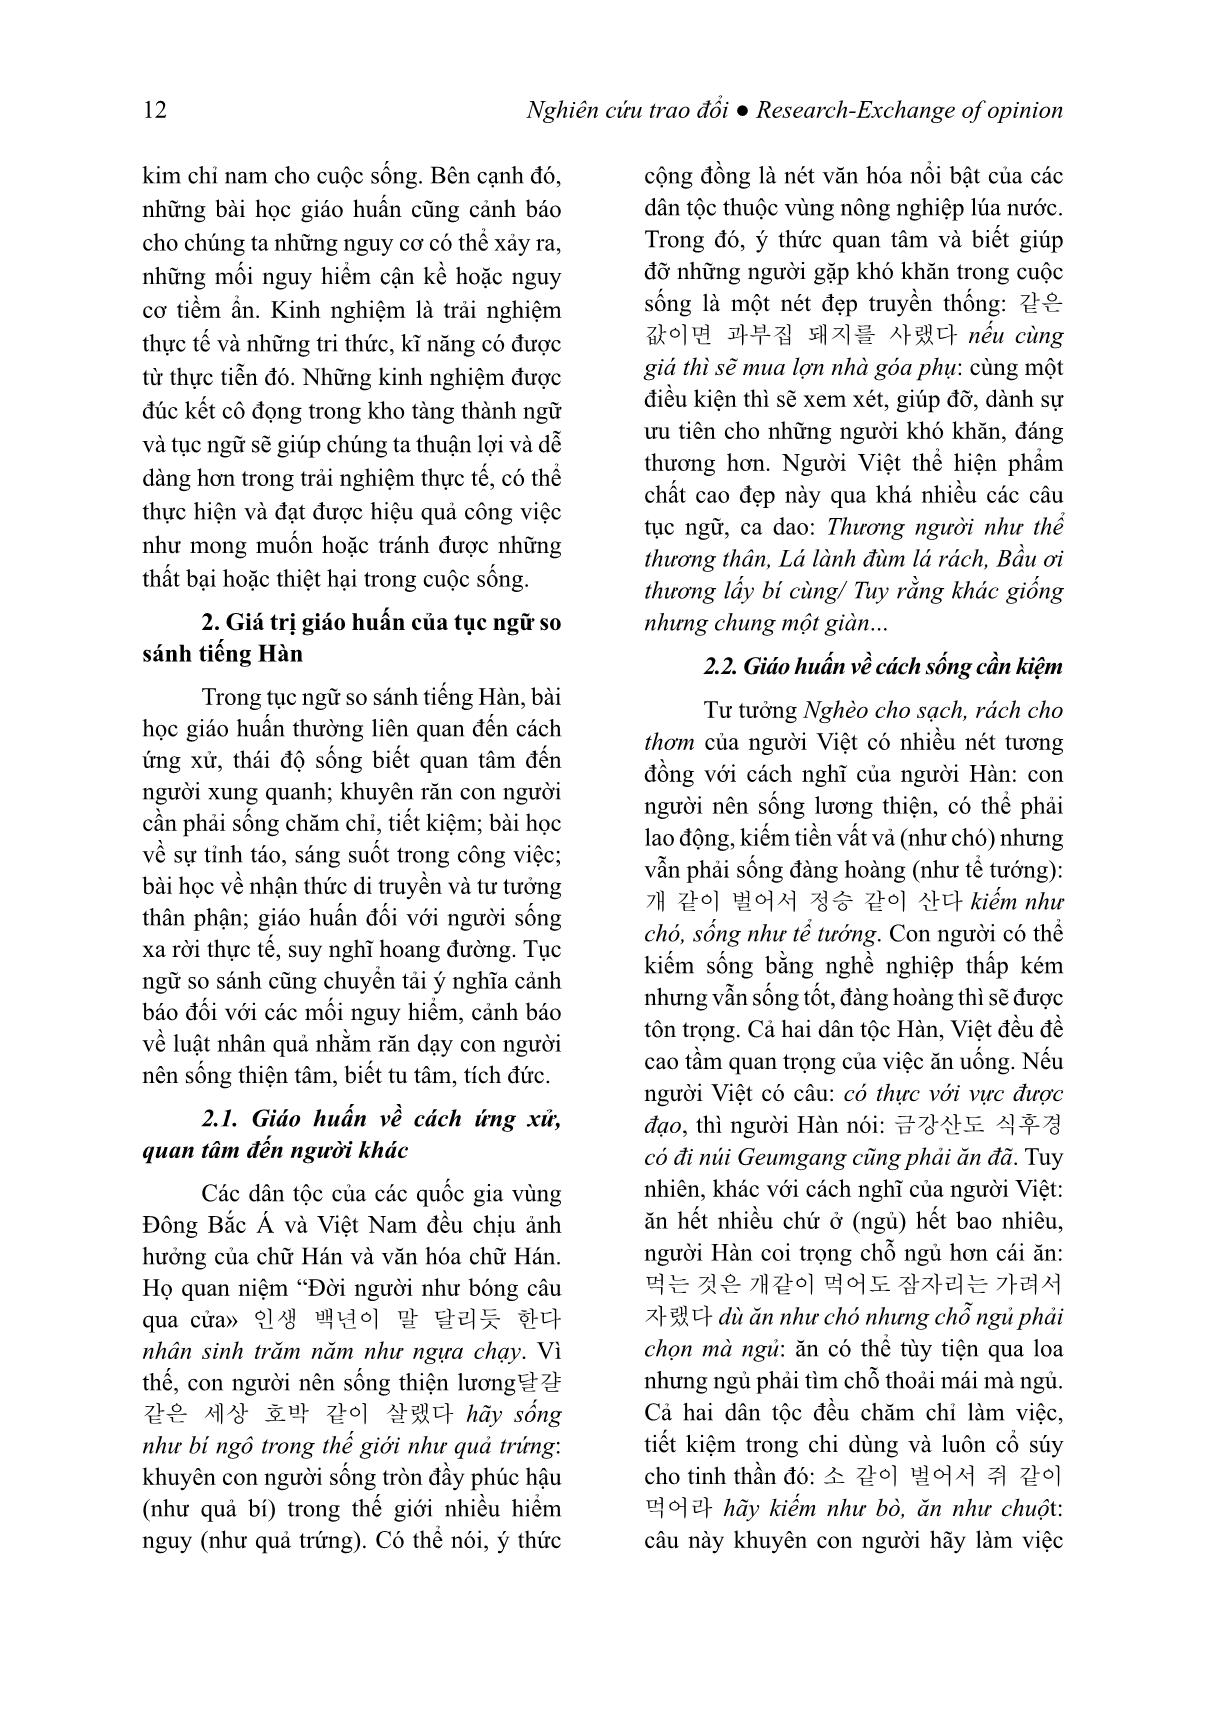 Giá trị giáo huấn của tục ngữ so sánh tiếng Hàn (Trọng tâm là các đơn vị có yếu tố chỉ con giáp) trang 3